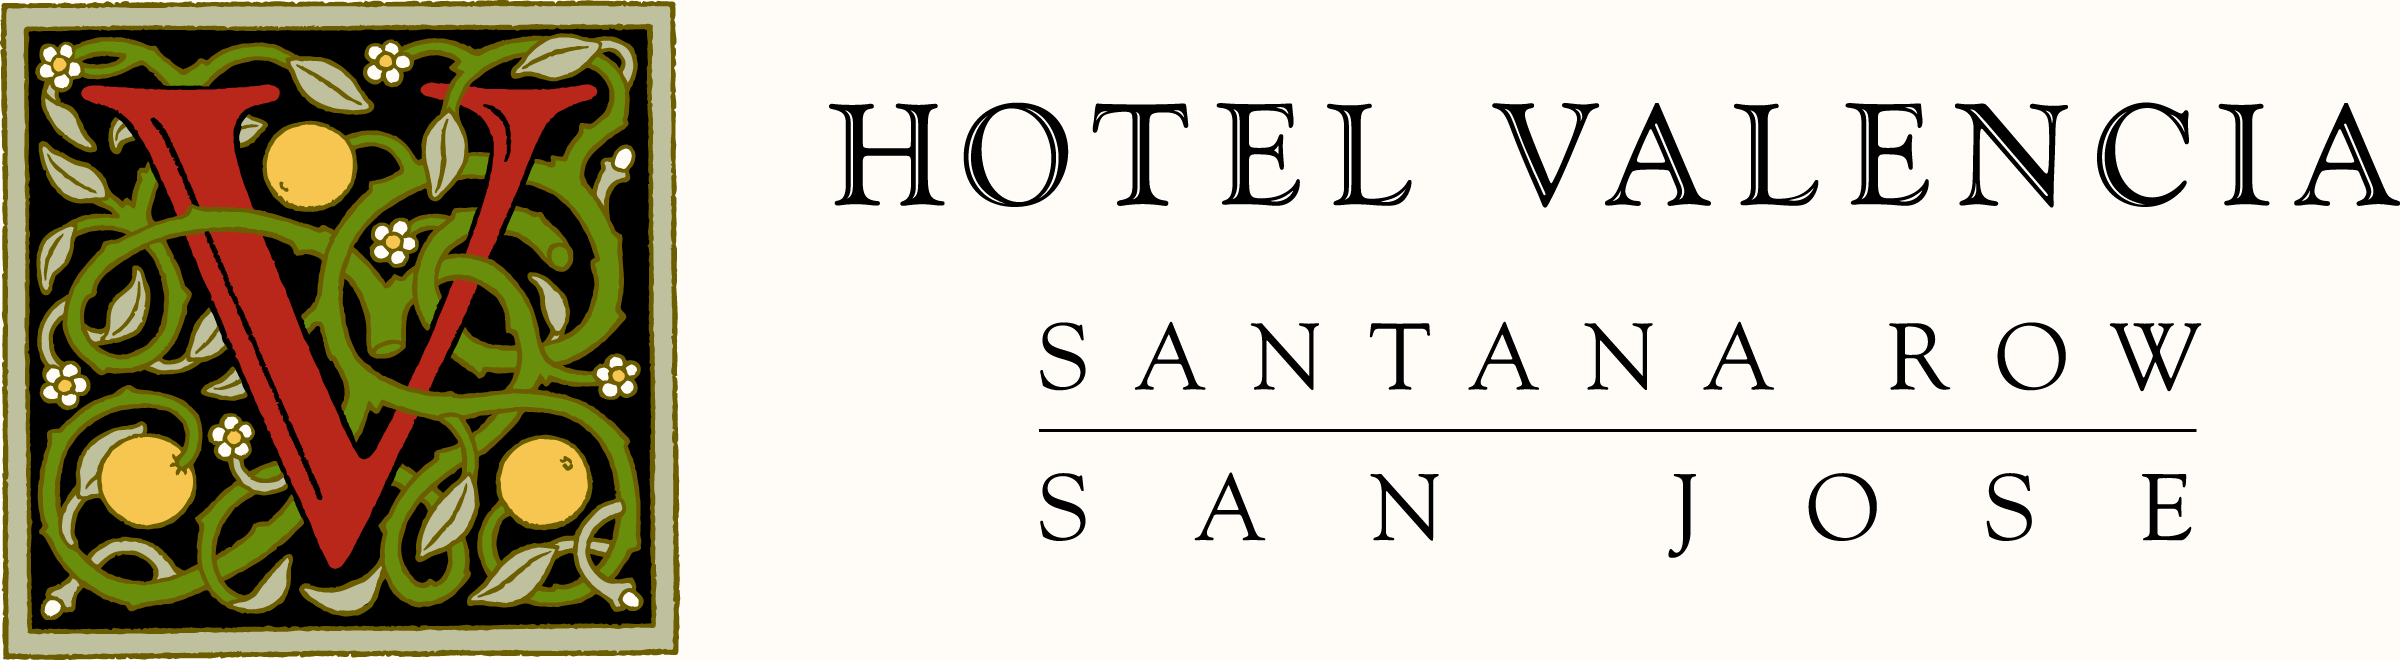 Hotel Valencia Santana Row, San Jose, CA Jobs | Hospitality Online